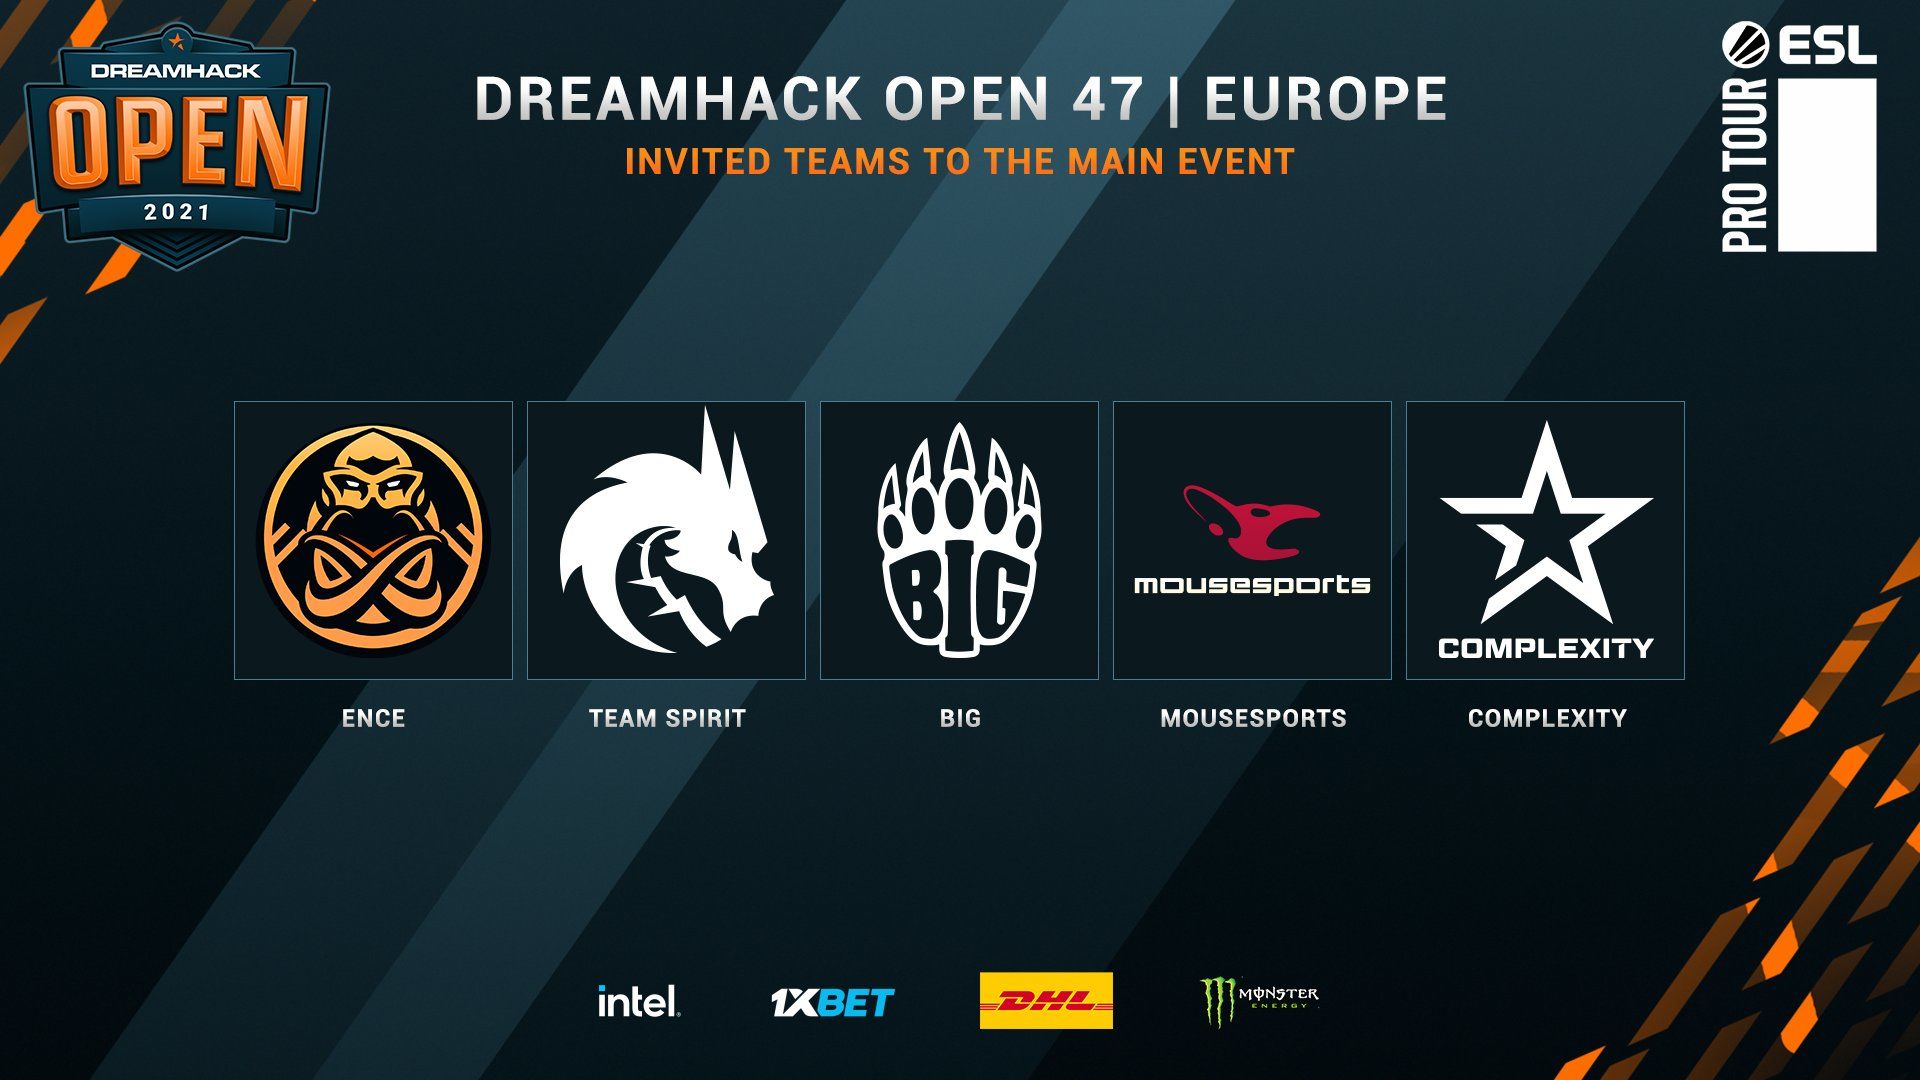 Команды, которые получили прямой инвайт на DreamHack Open November 2021